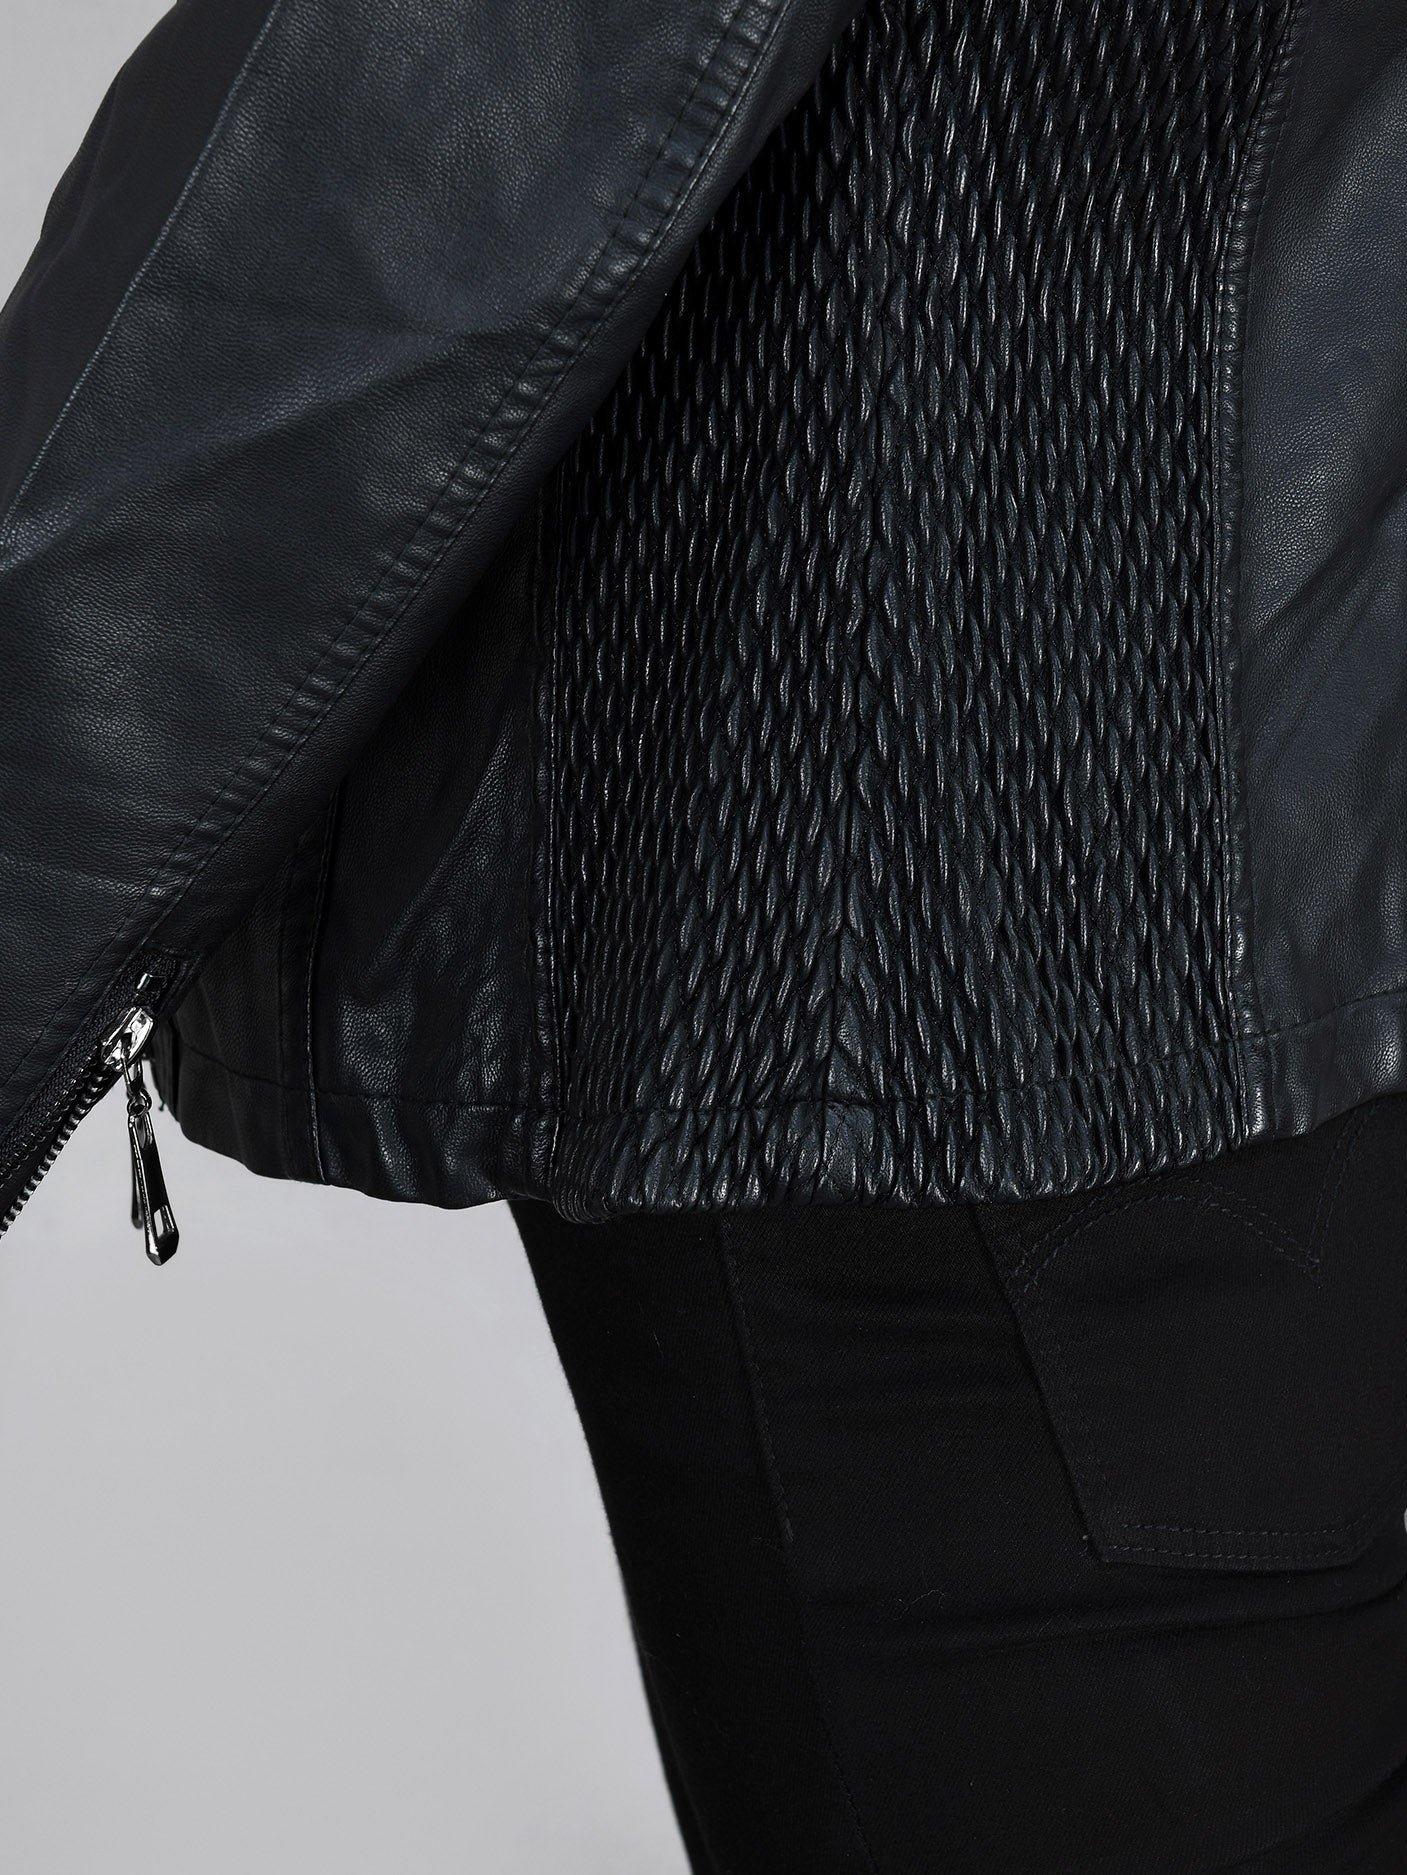 Iconic Leather Jacket - Black